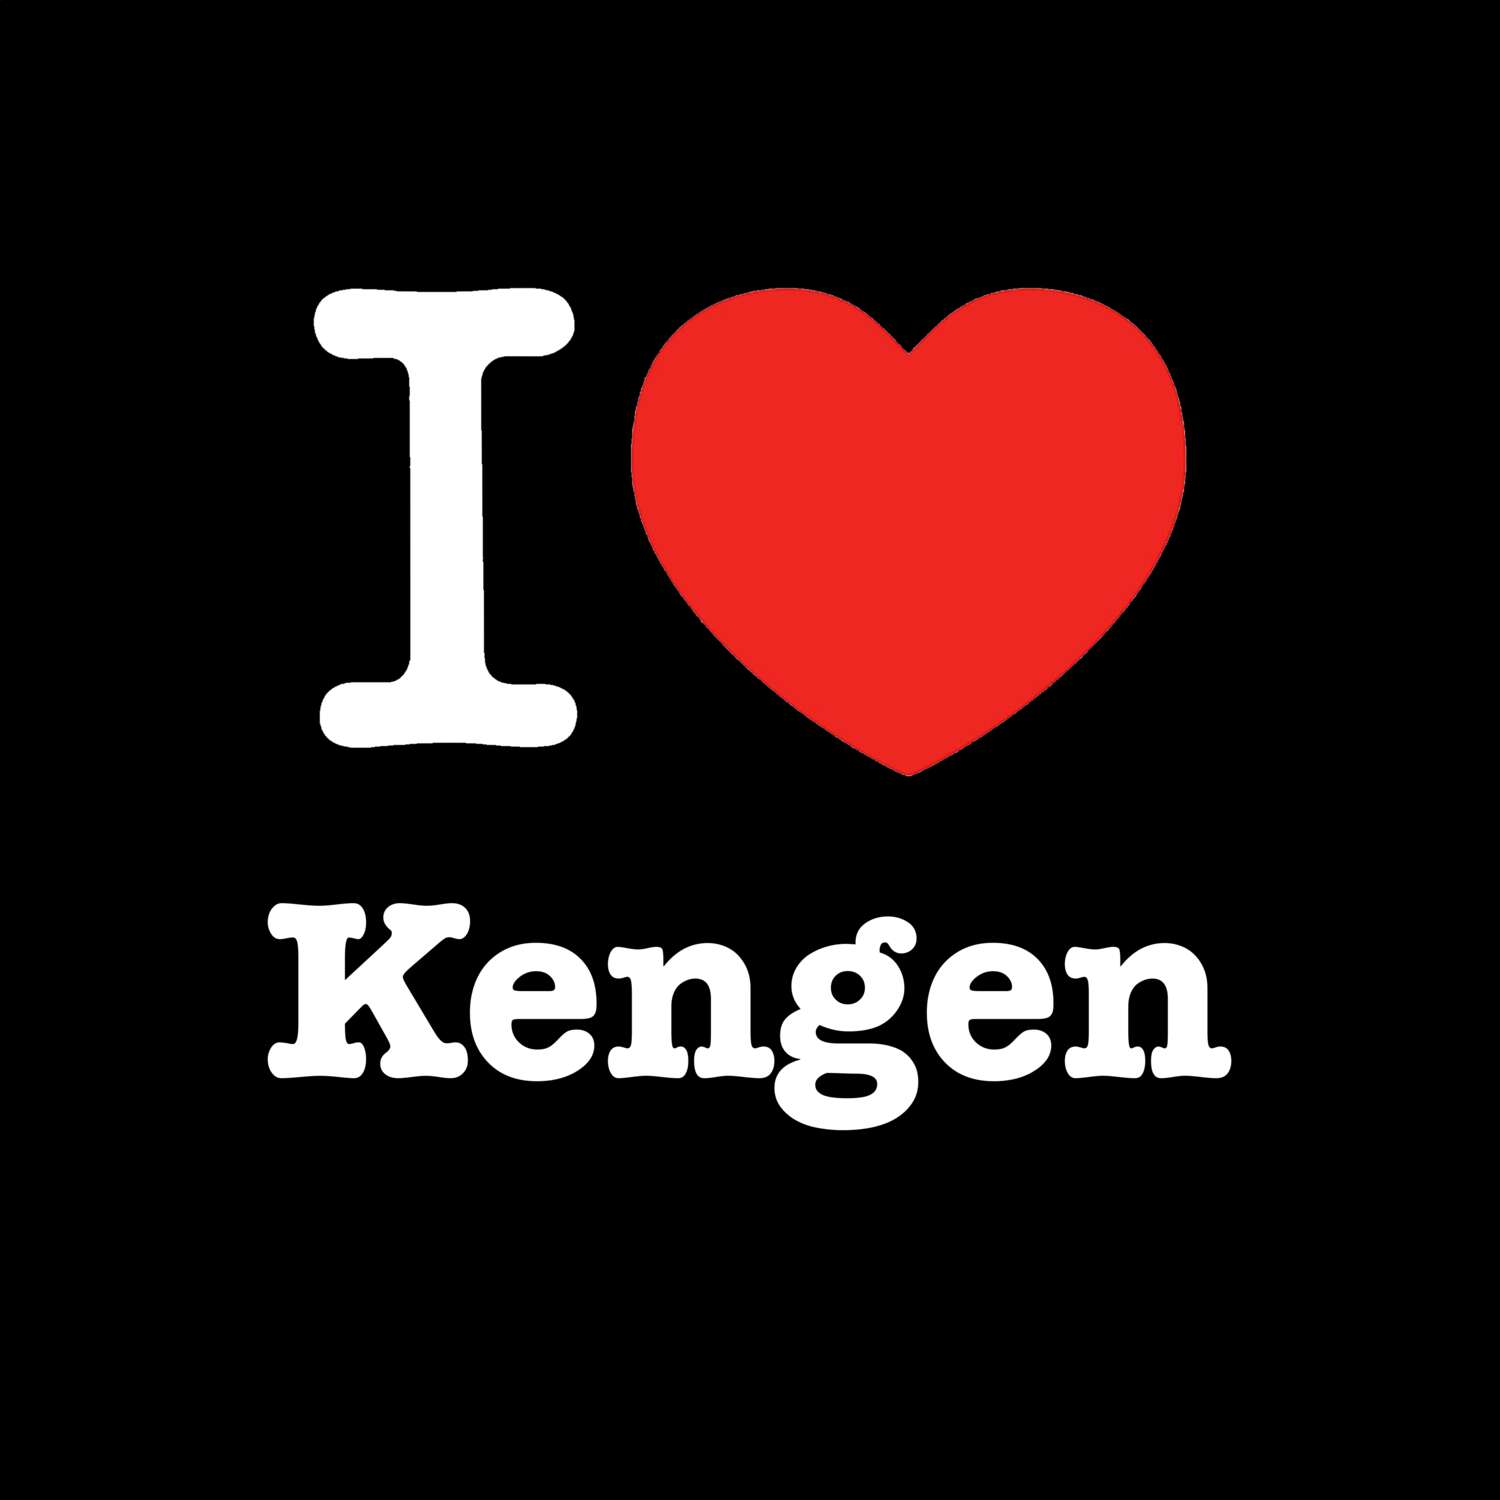 Kengen T-Shirt »I love«